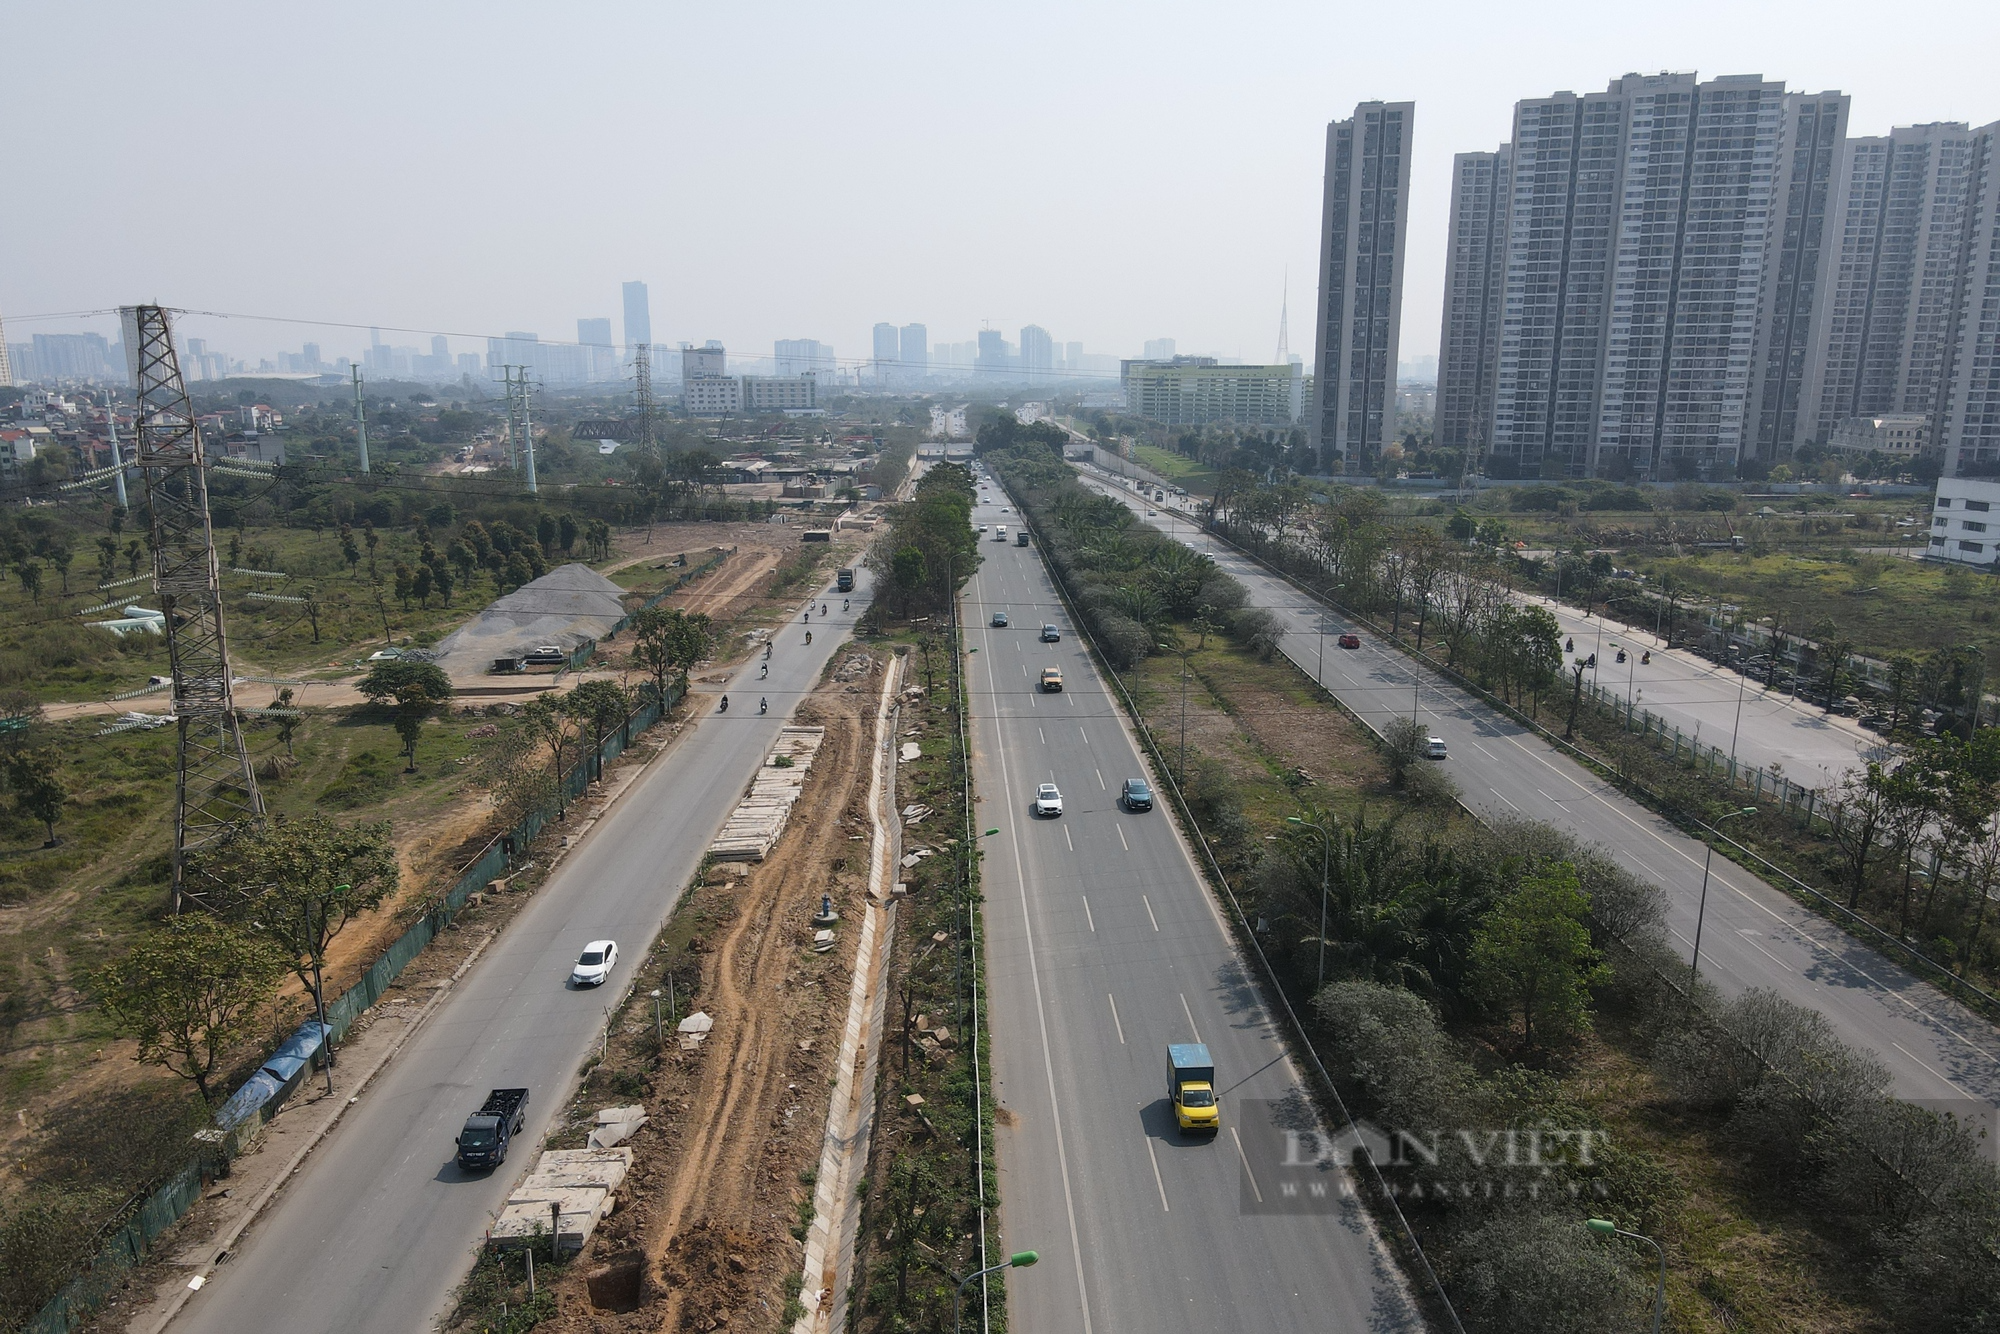 Hàng cây xanh chết khô trên Đại lộ Thăng Long được nhổ bỏ - Ảnh 3.